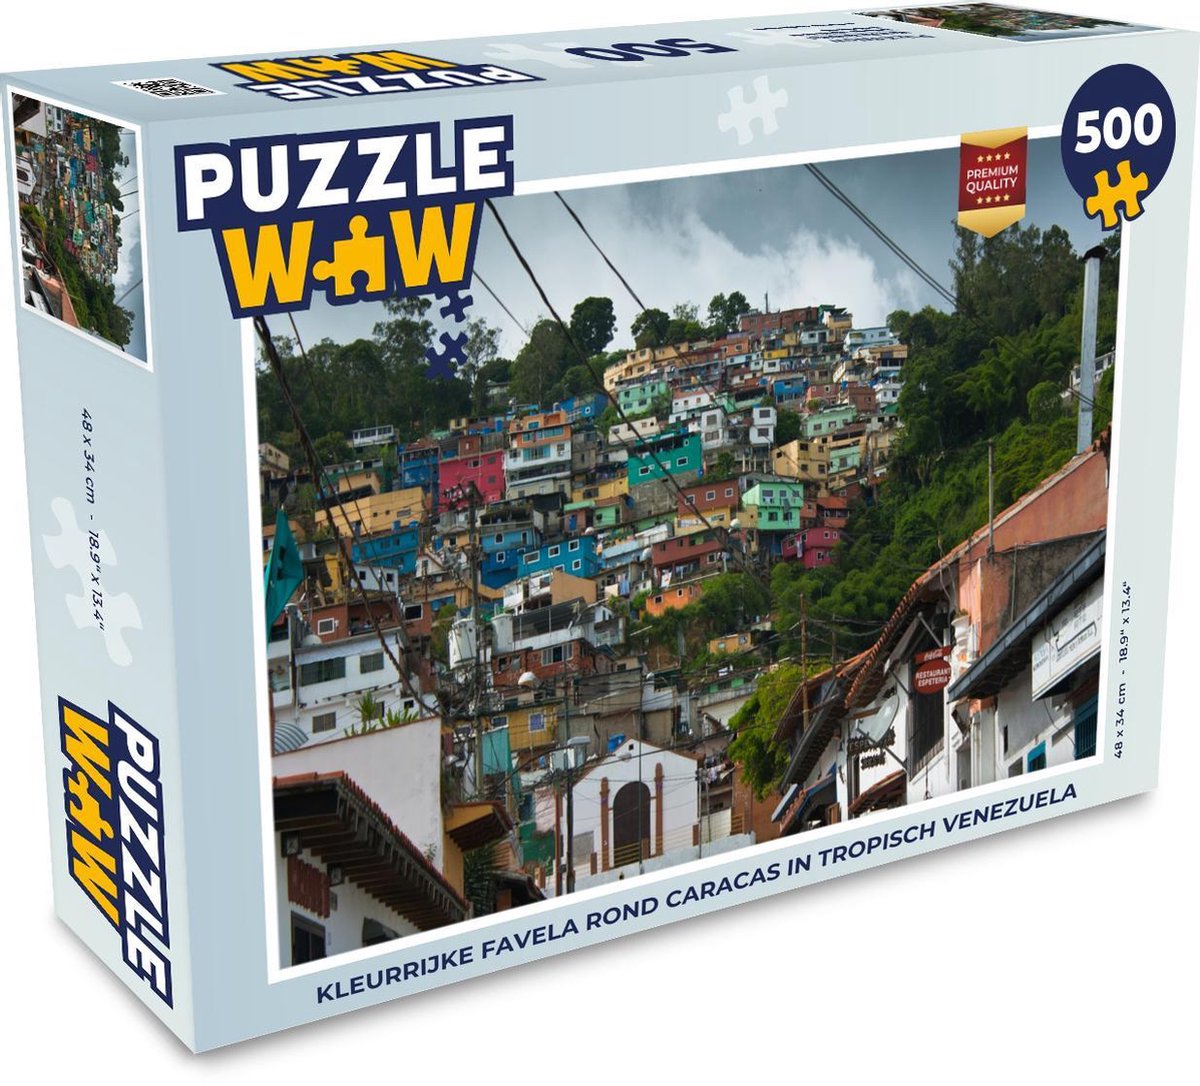 Afbeelding van product Puzzel 500 stukjes Caracas - Kleurrijke favela rond Caracas in tropisch Venezuela - PuzzleWow heeft +100000 puzzels